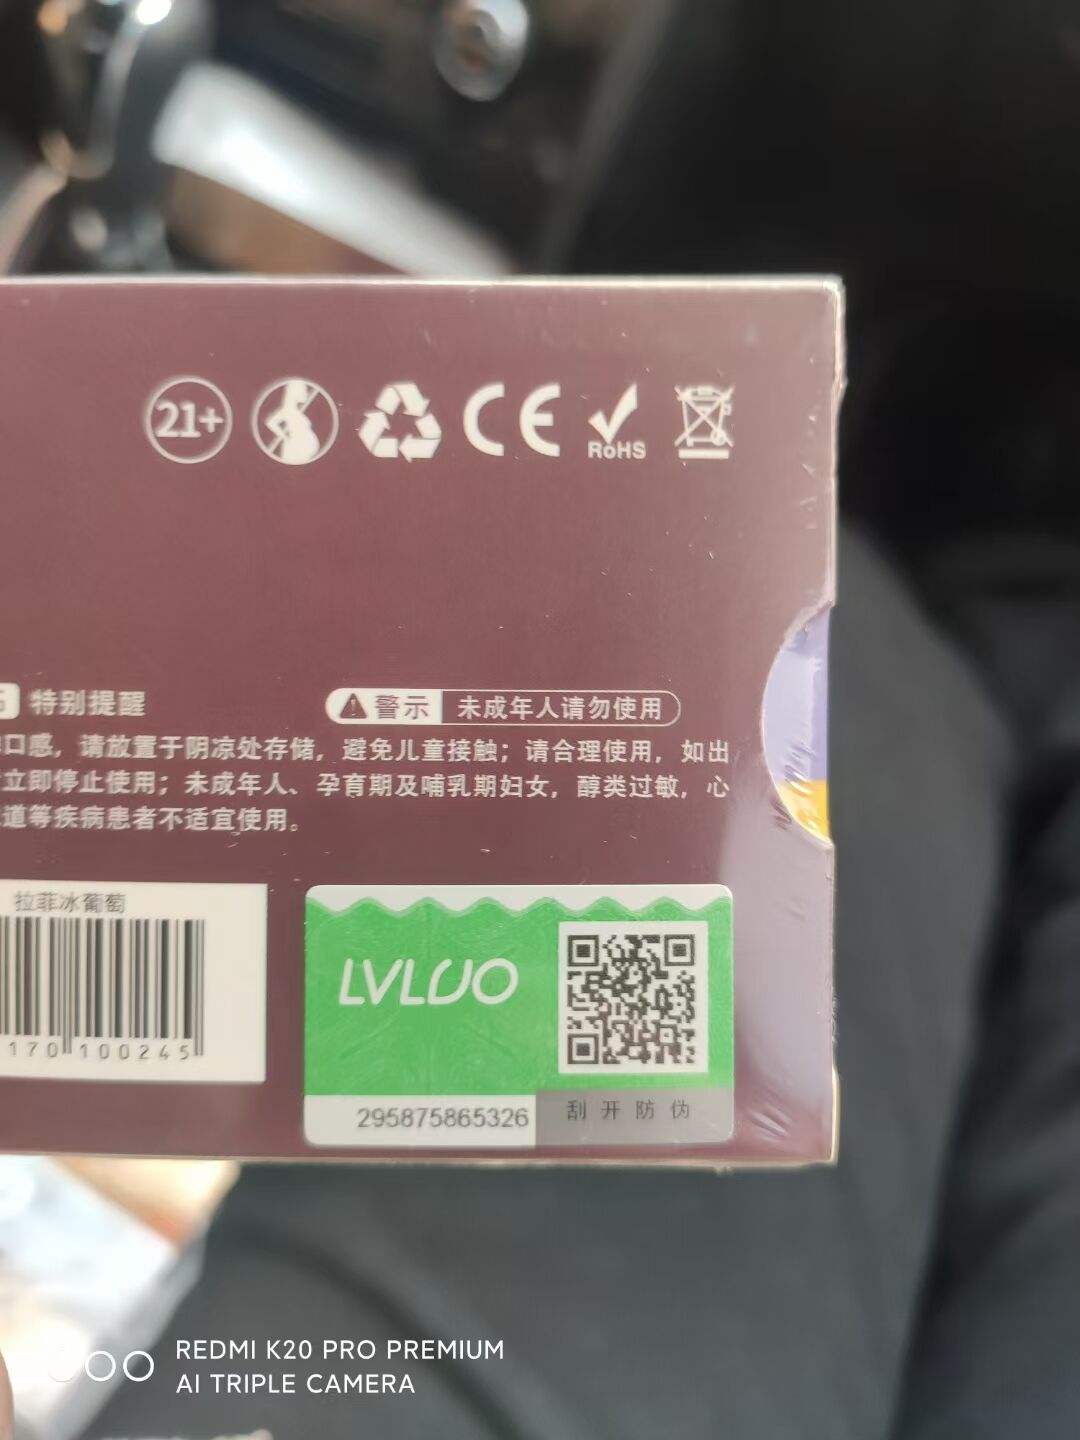 绿萝电子烟LVLUO价格图片的简单介绍